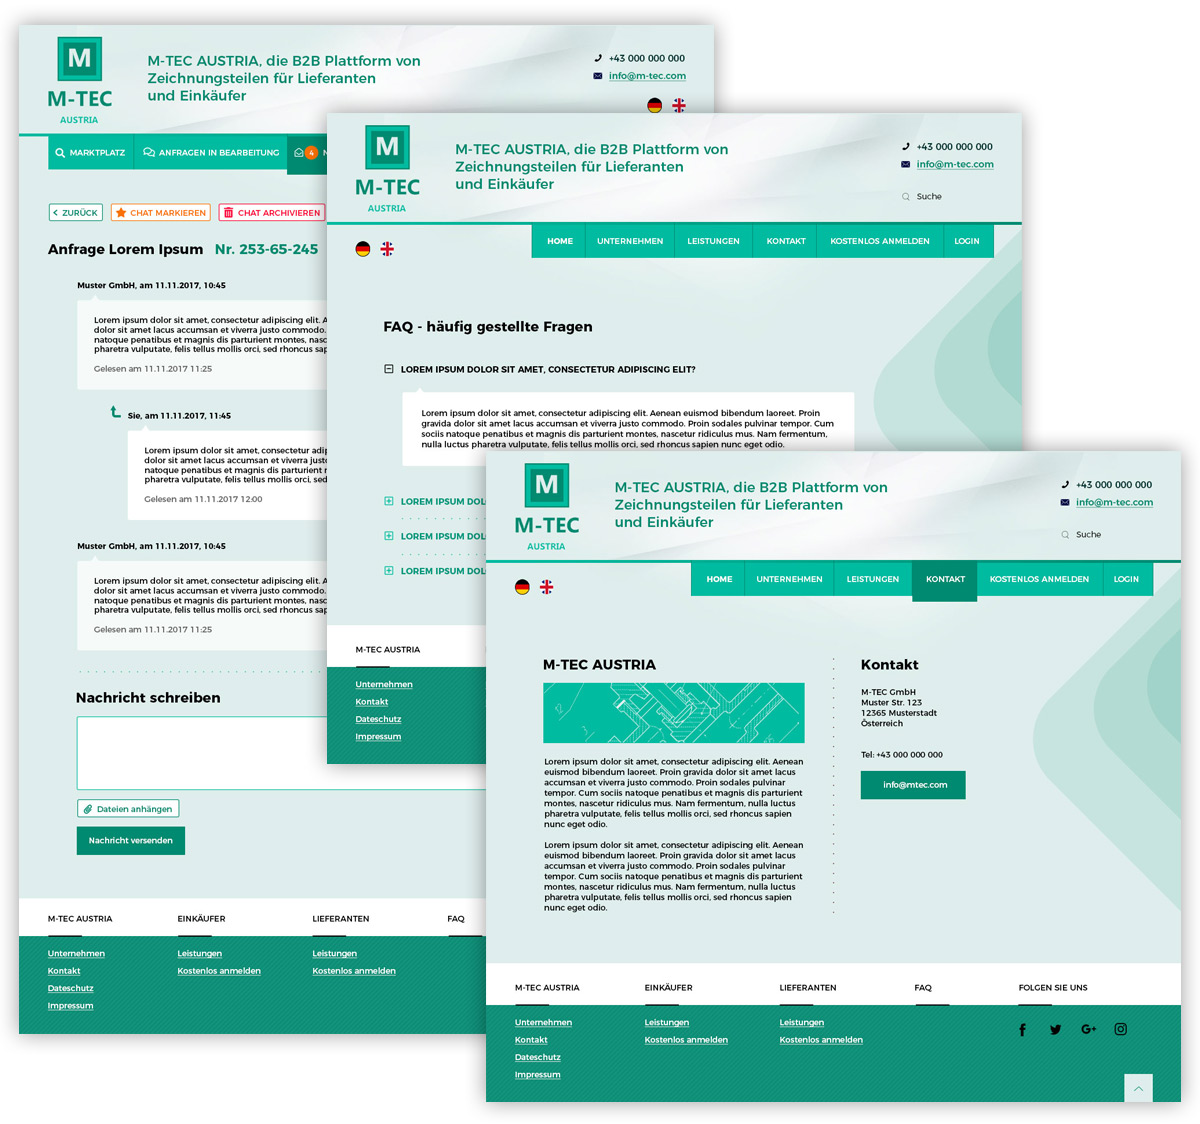 Дизайн сайта для M-TEC Austria - изображение 5